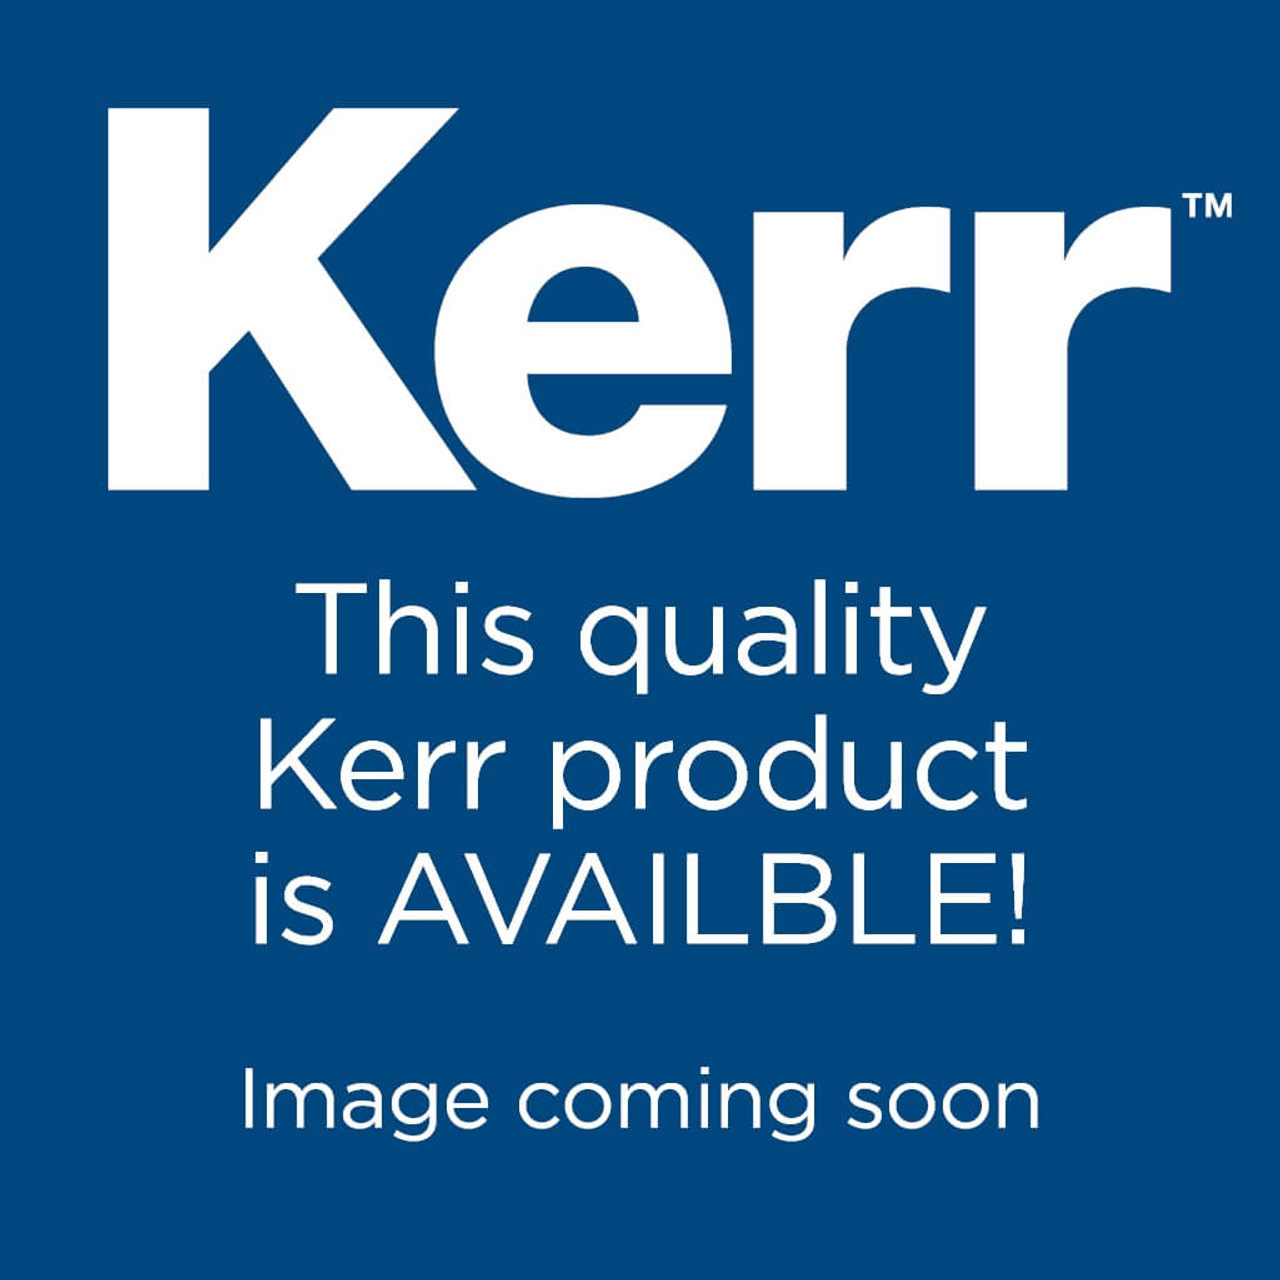 K-3 ENGINE FILE, G-PACK, 25MM, 830-9925, Kerr Dental